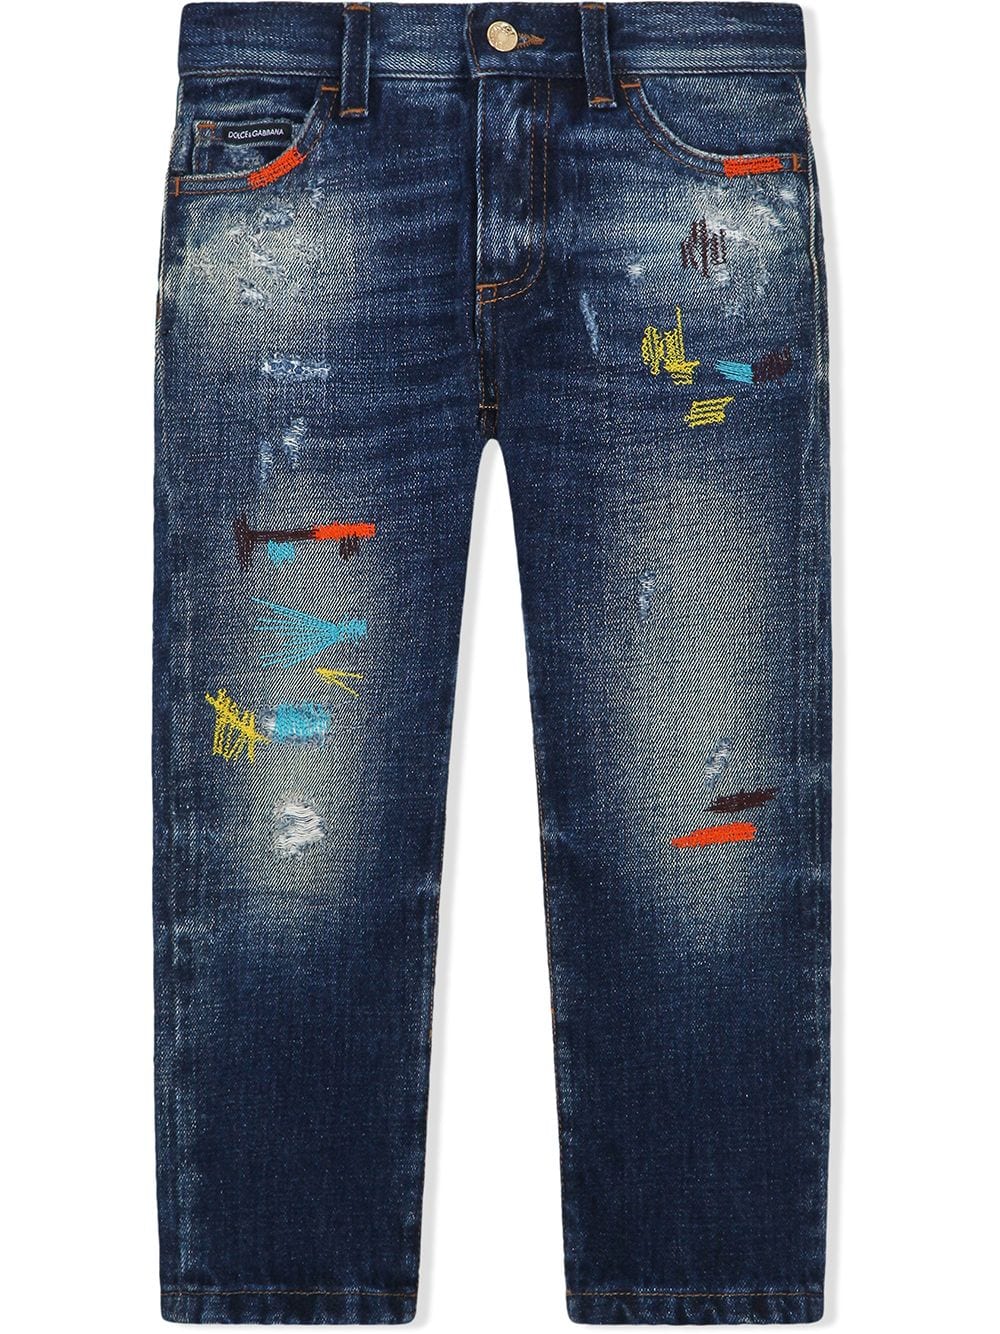 фото Dolce & gabbana kids джинсы с контрастной строчкой